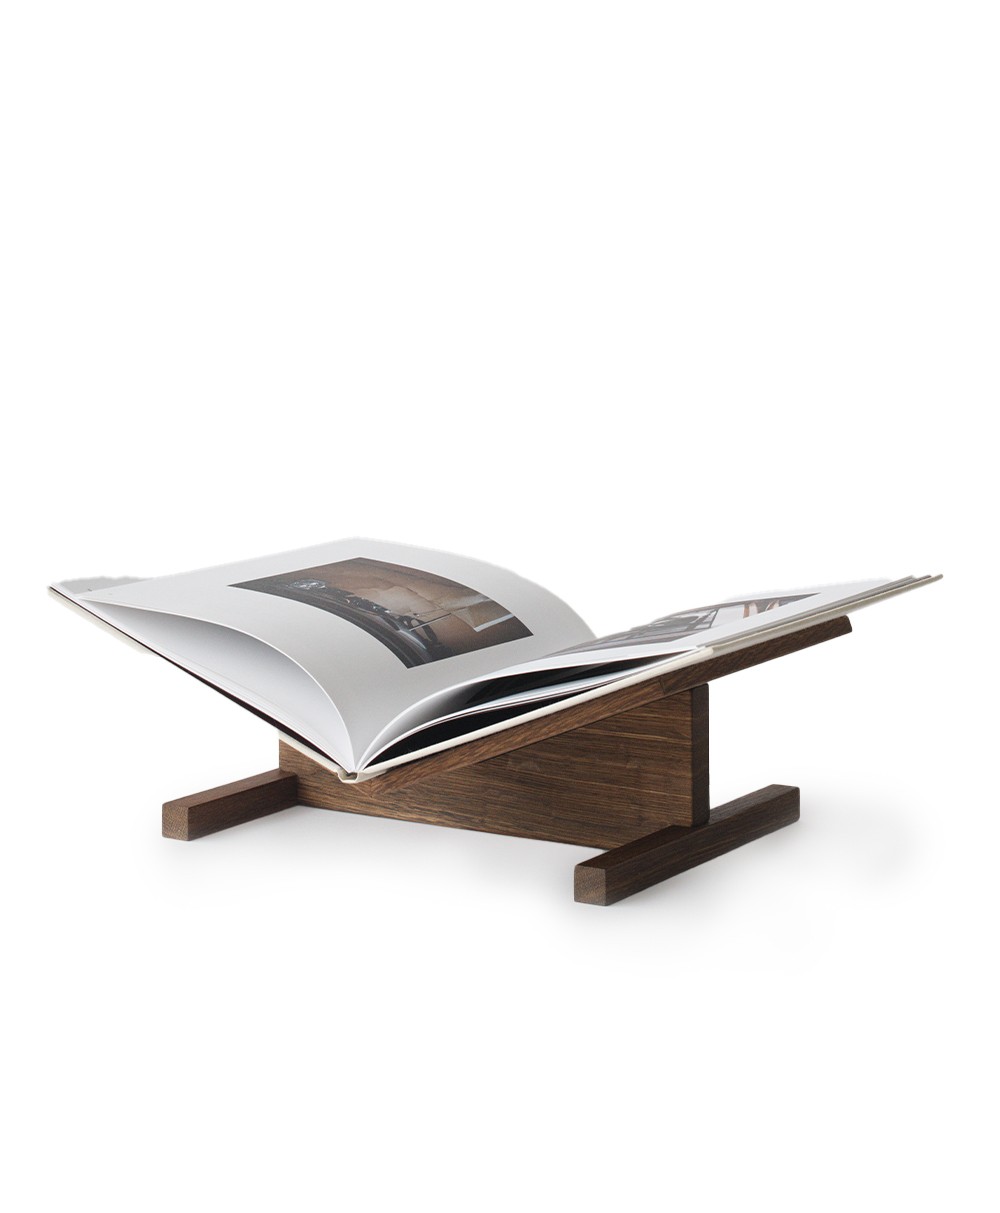 Produktbild des Buchständers „Page“ aus Eiche von der Marke CACHÉ im RAUM concept store 